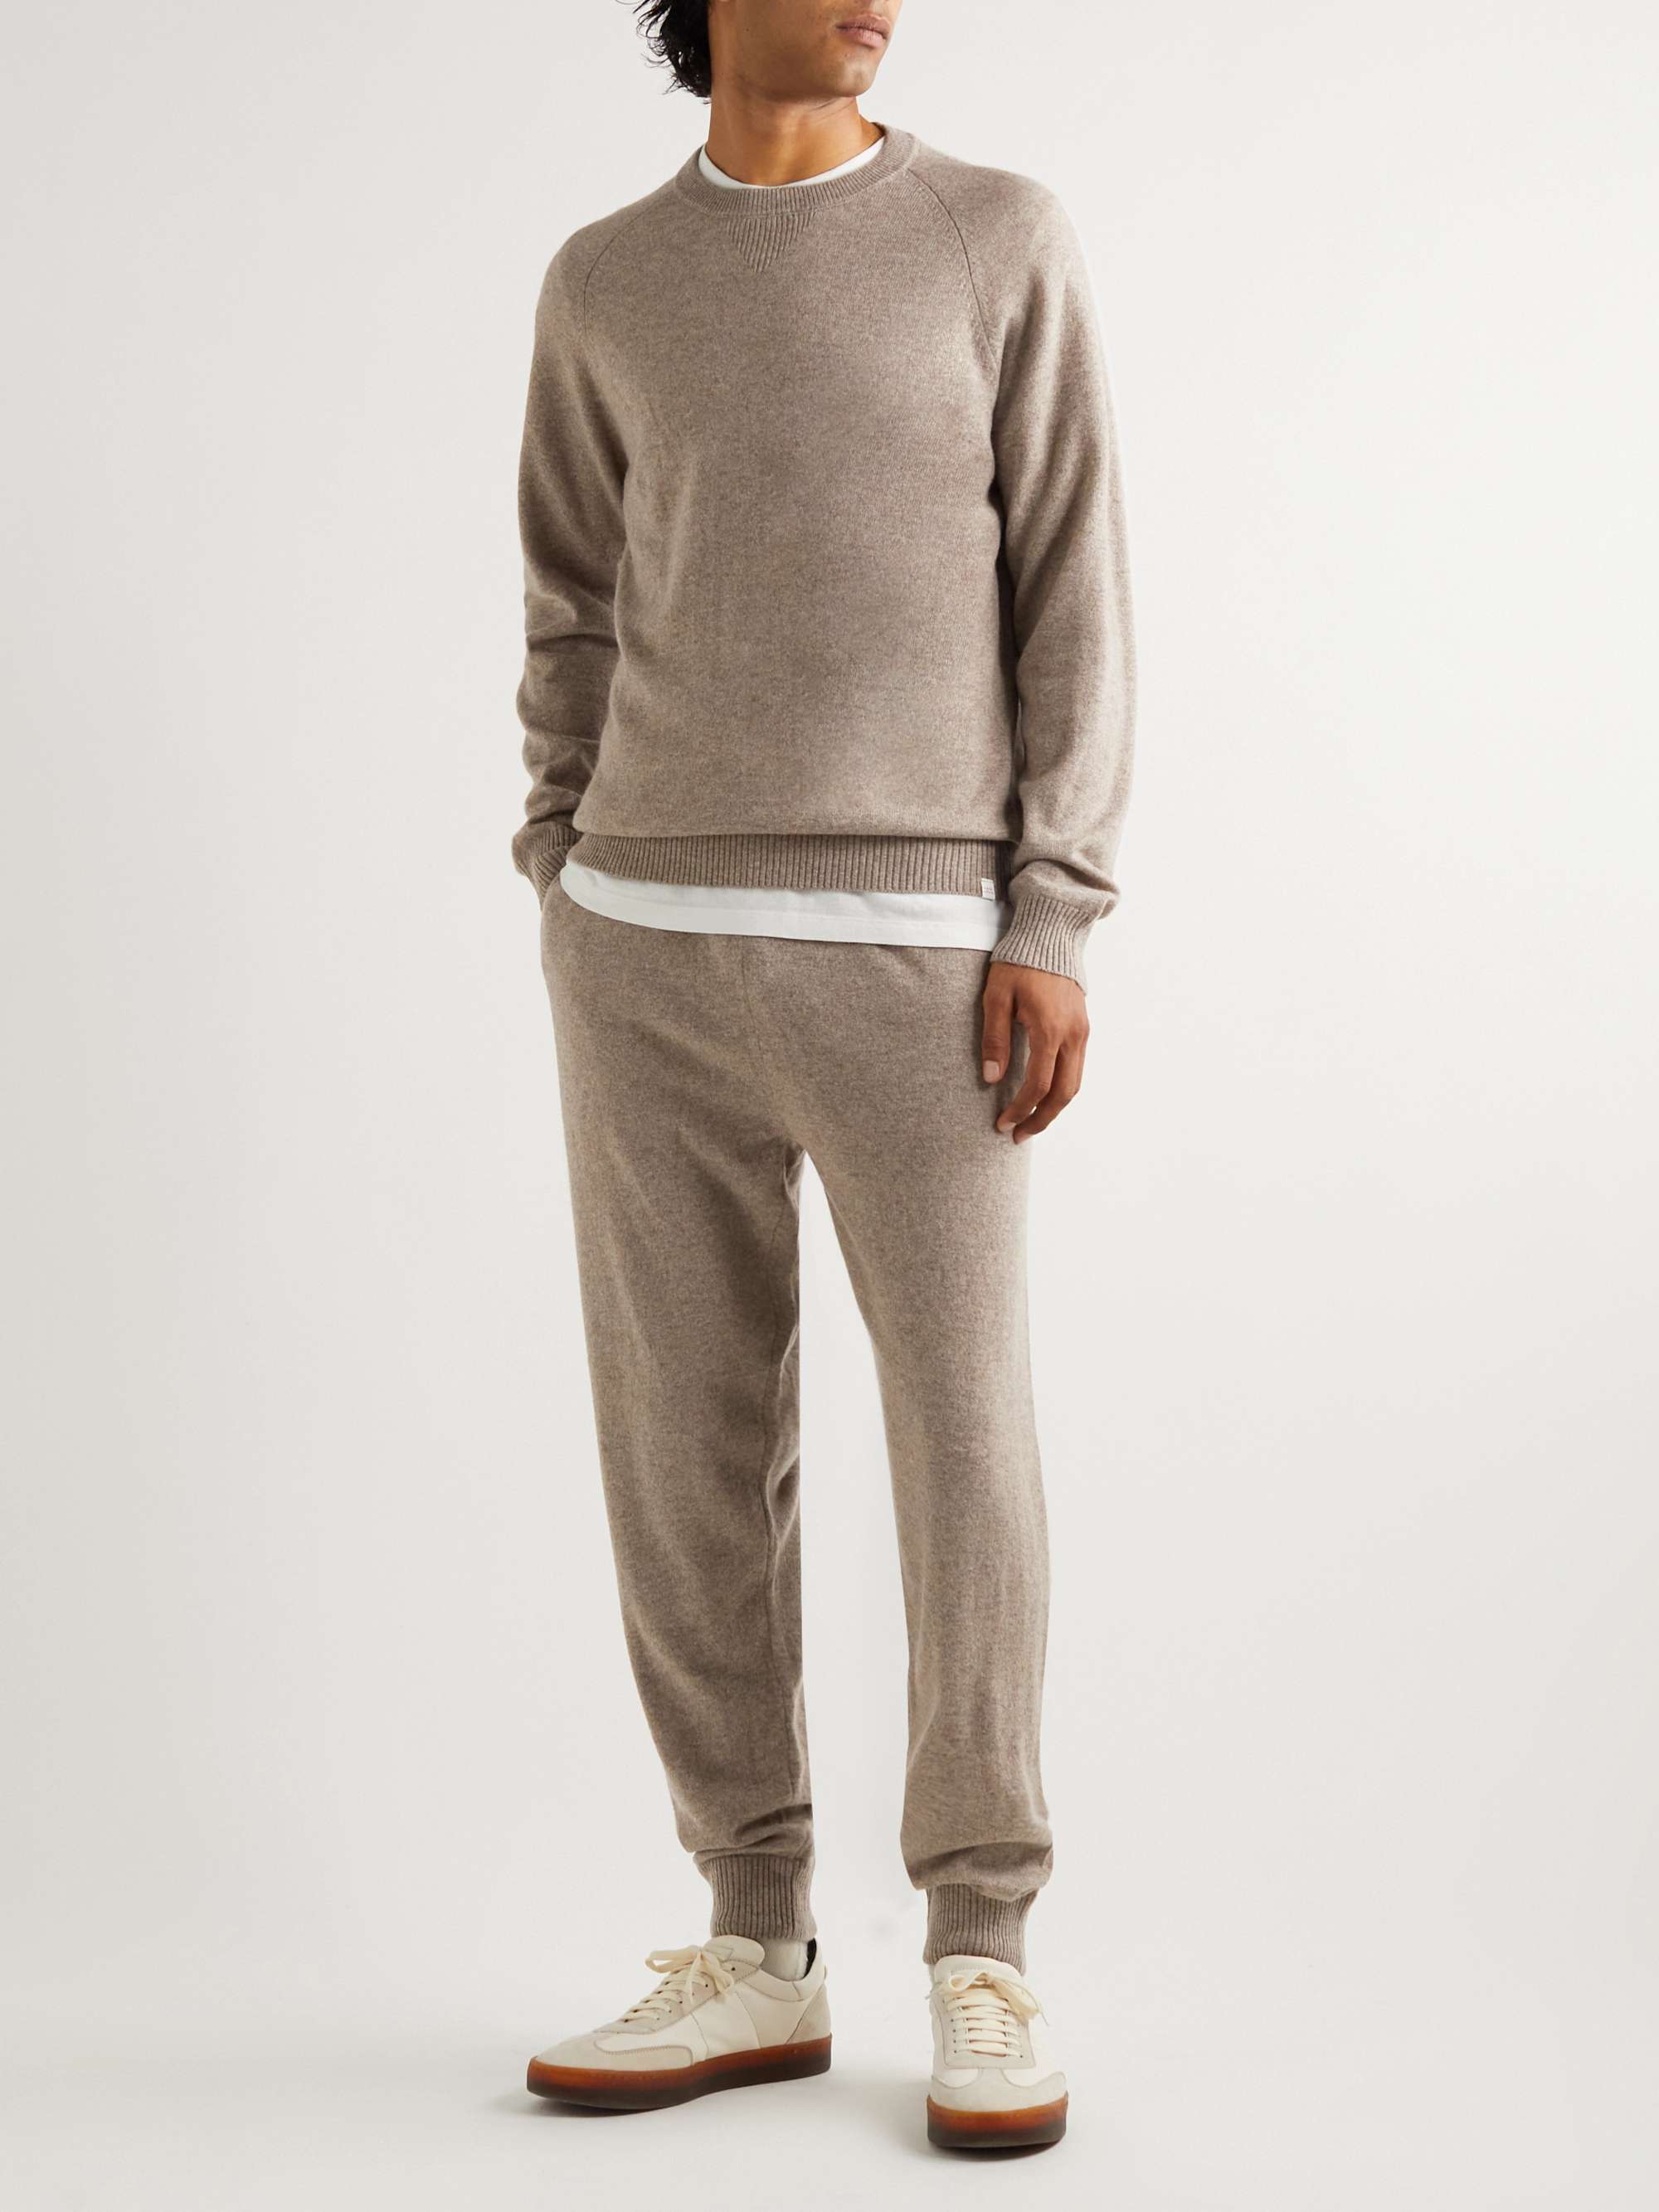 DEREK ROSE Cashmere Sweater for Men | MR PORTER